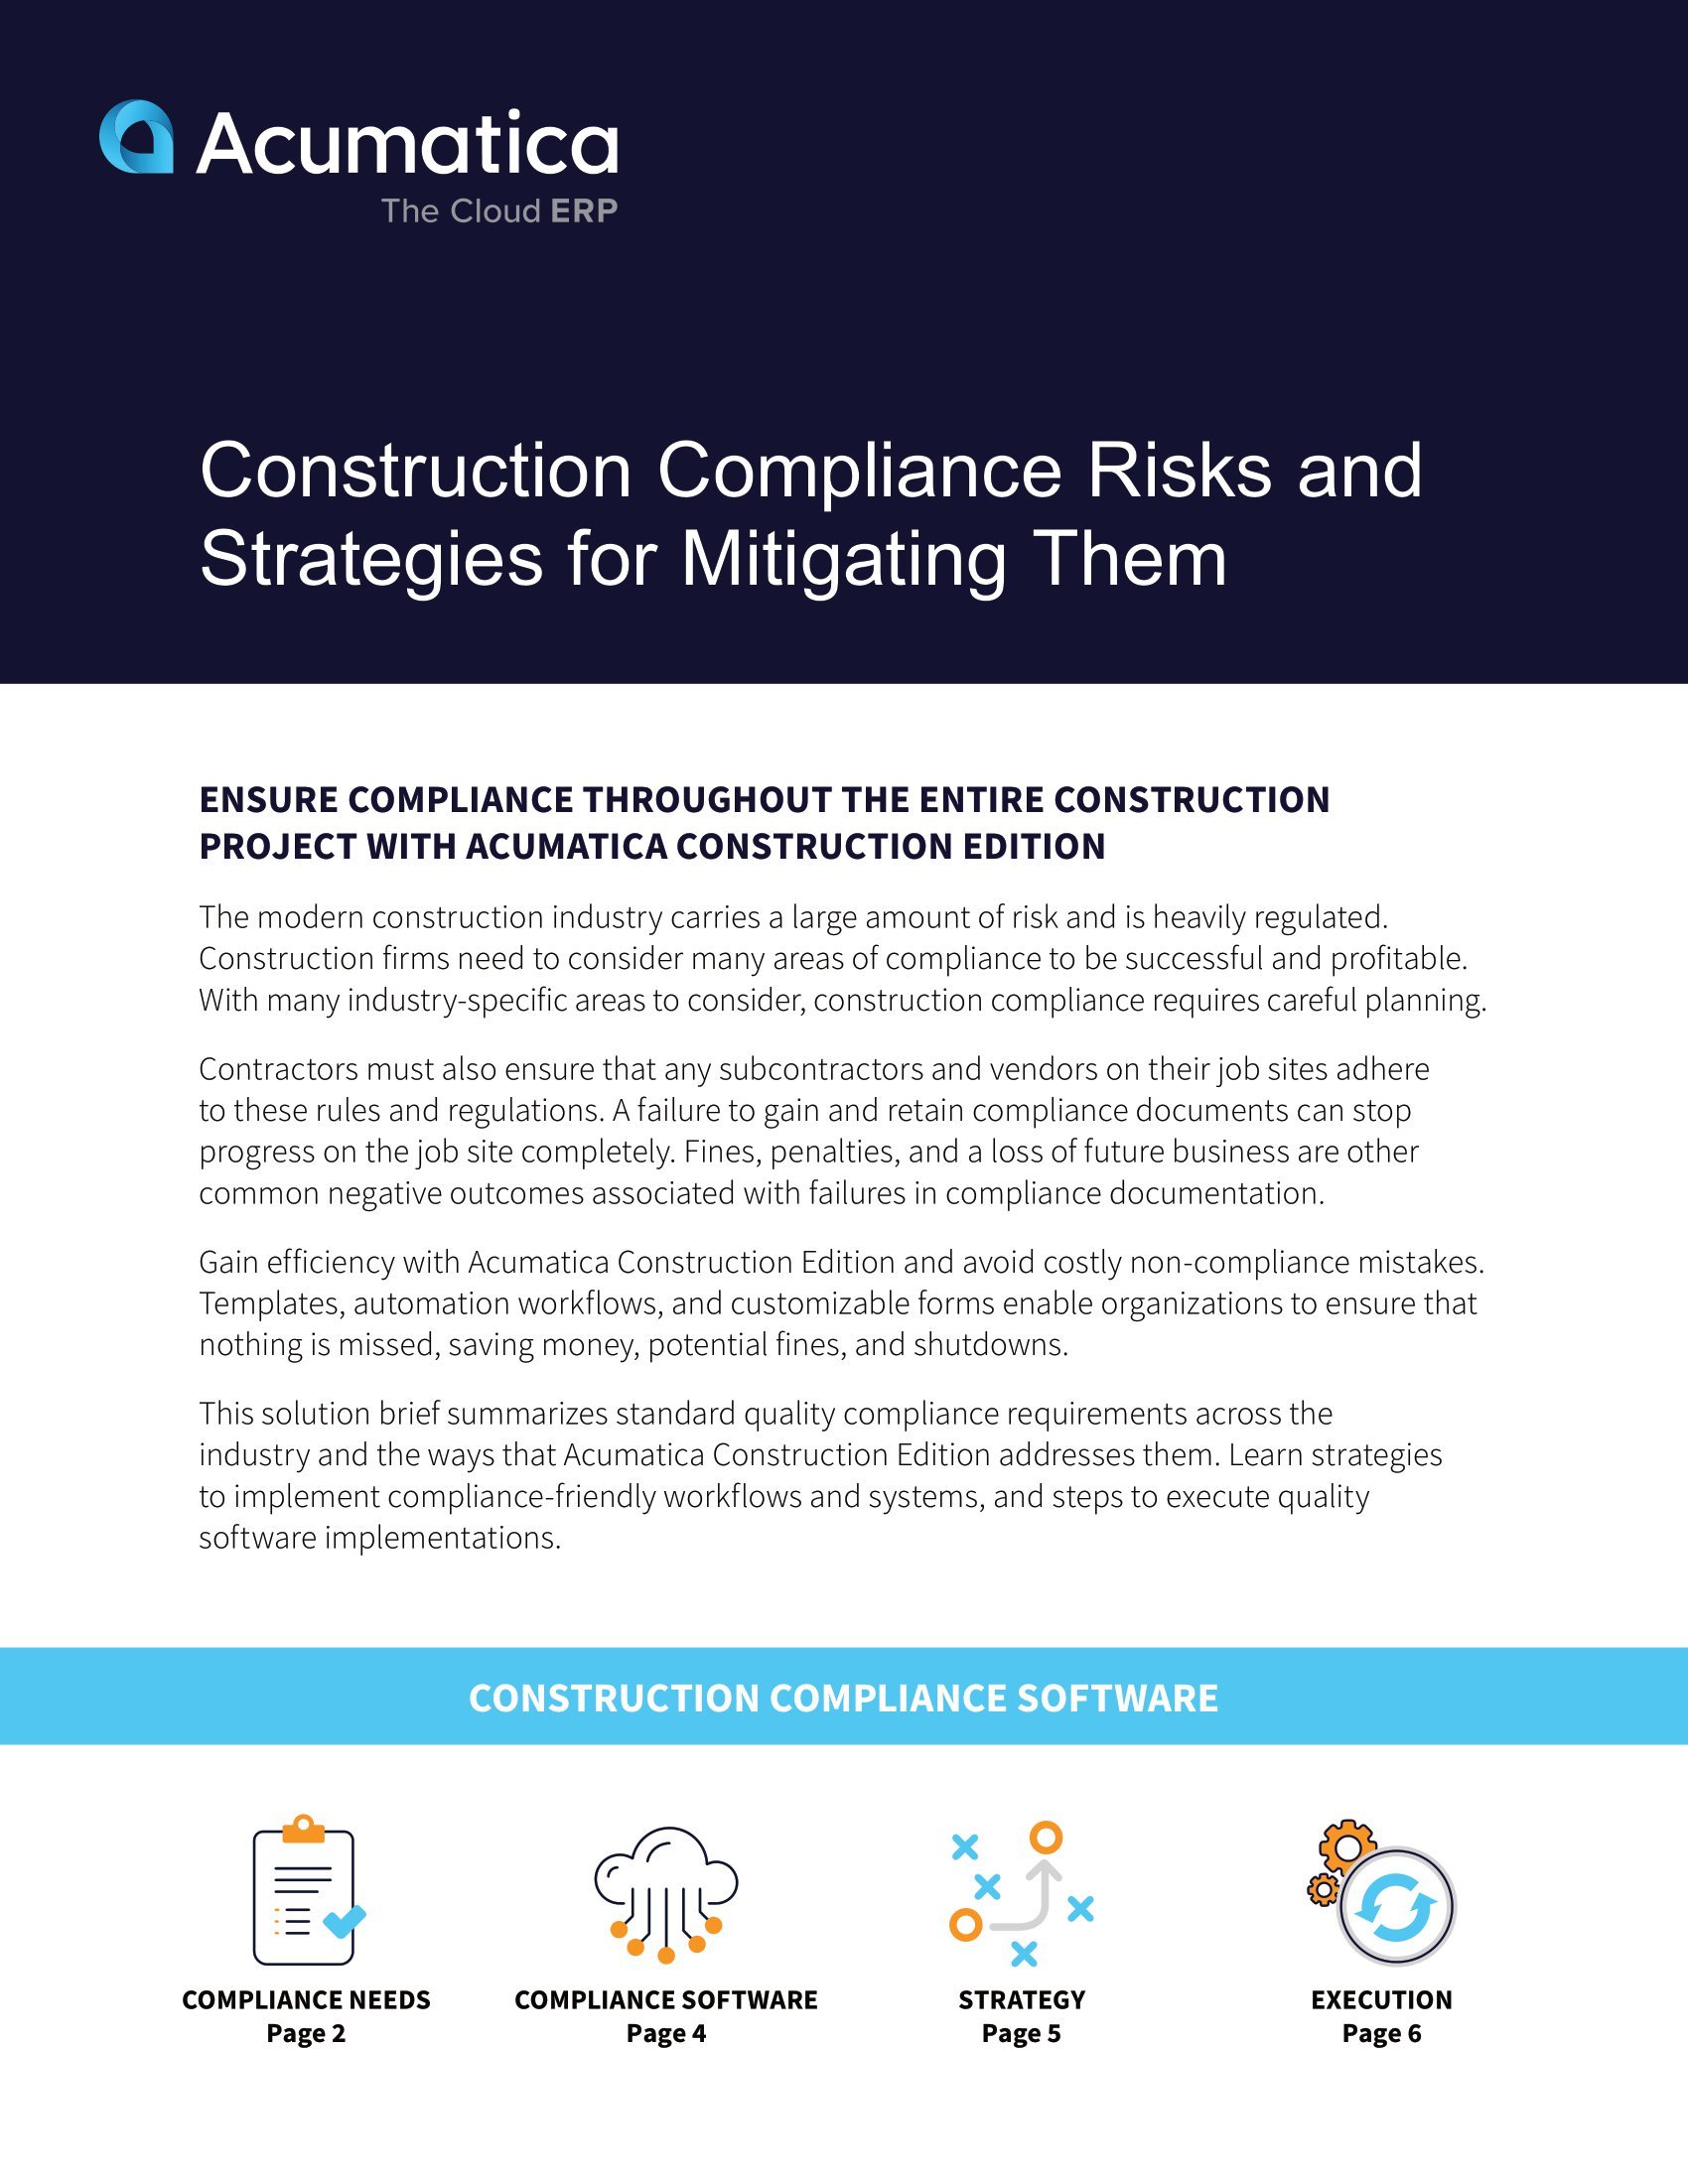 Une solution simple pour répondre aux besoins complexes et multiples en matière de conformité dans le secteur de la construction